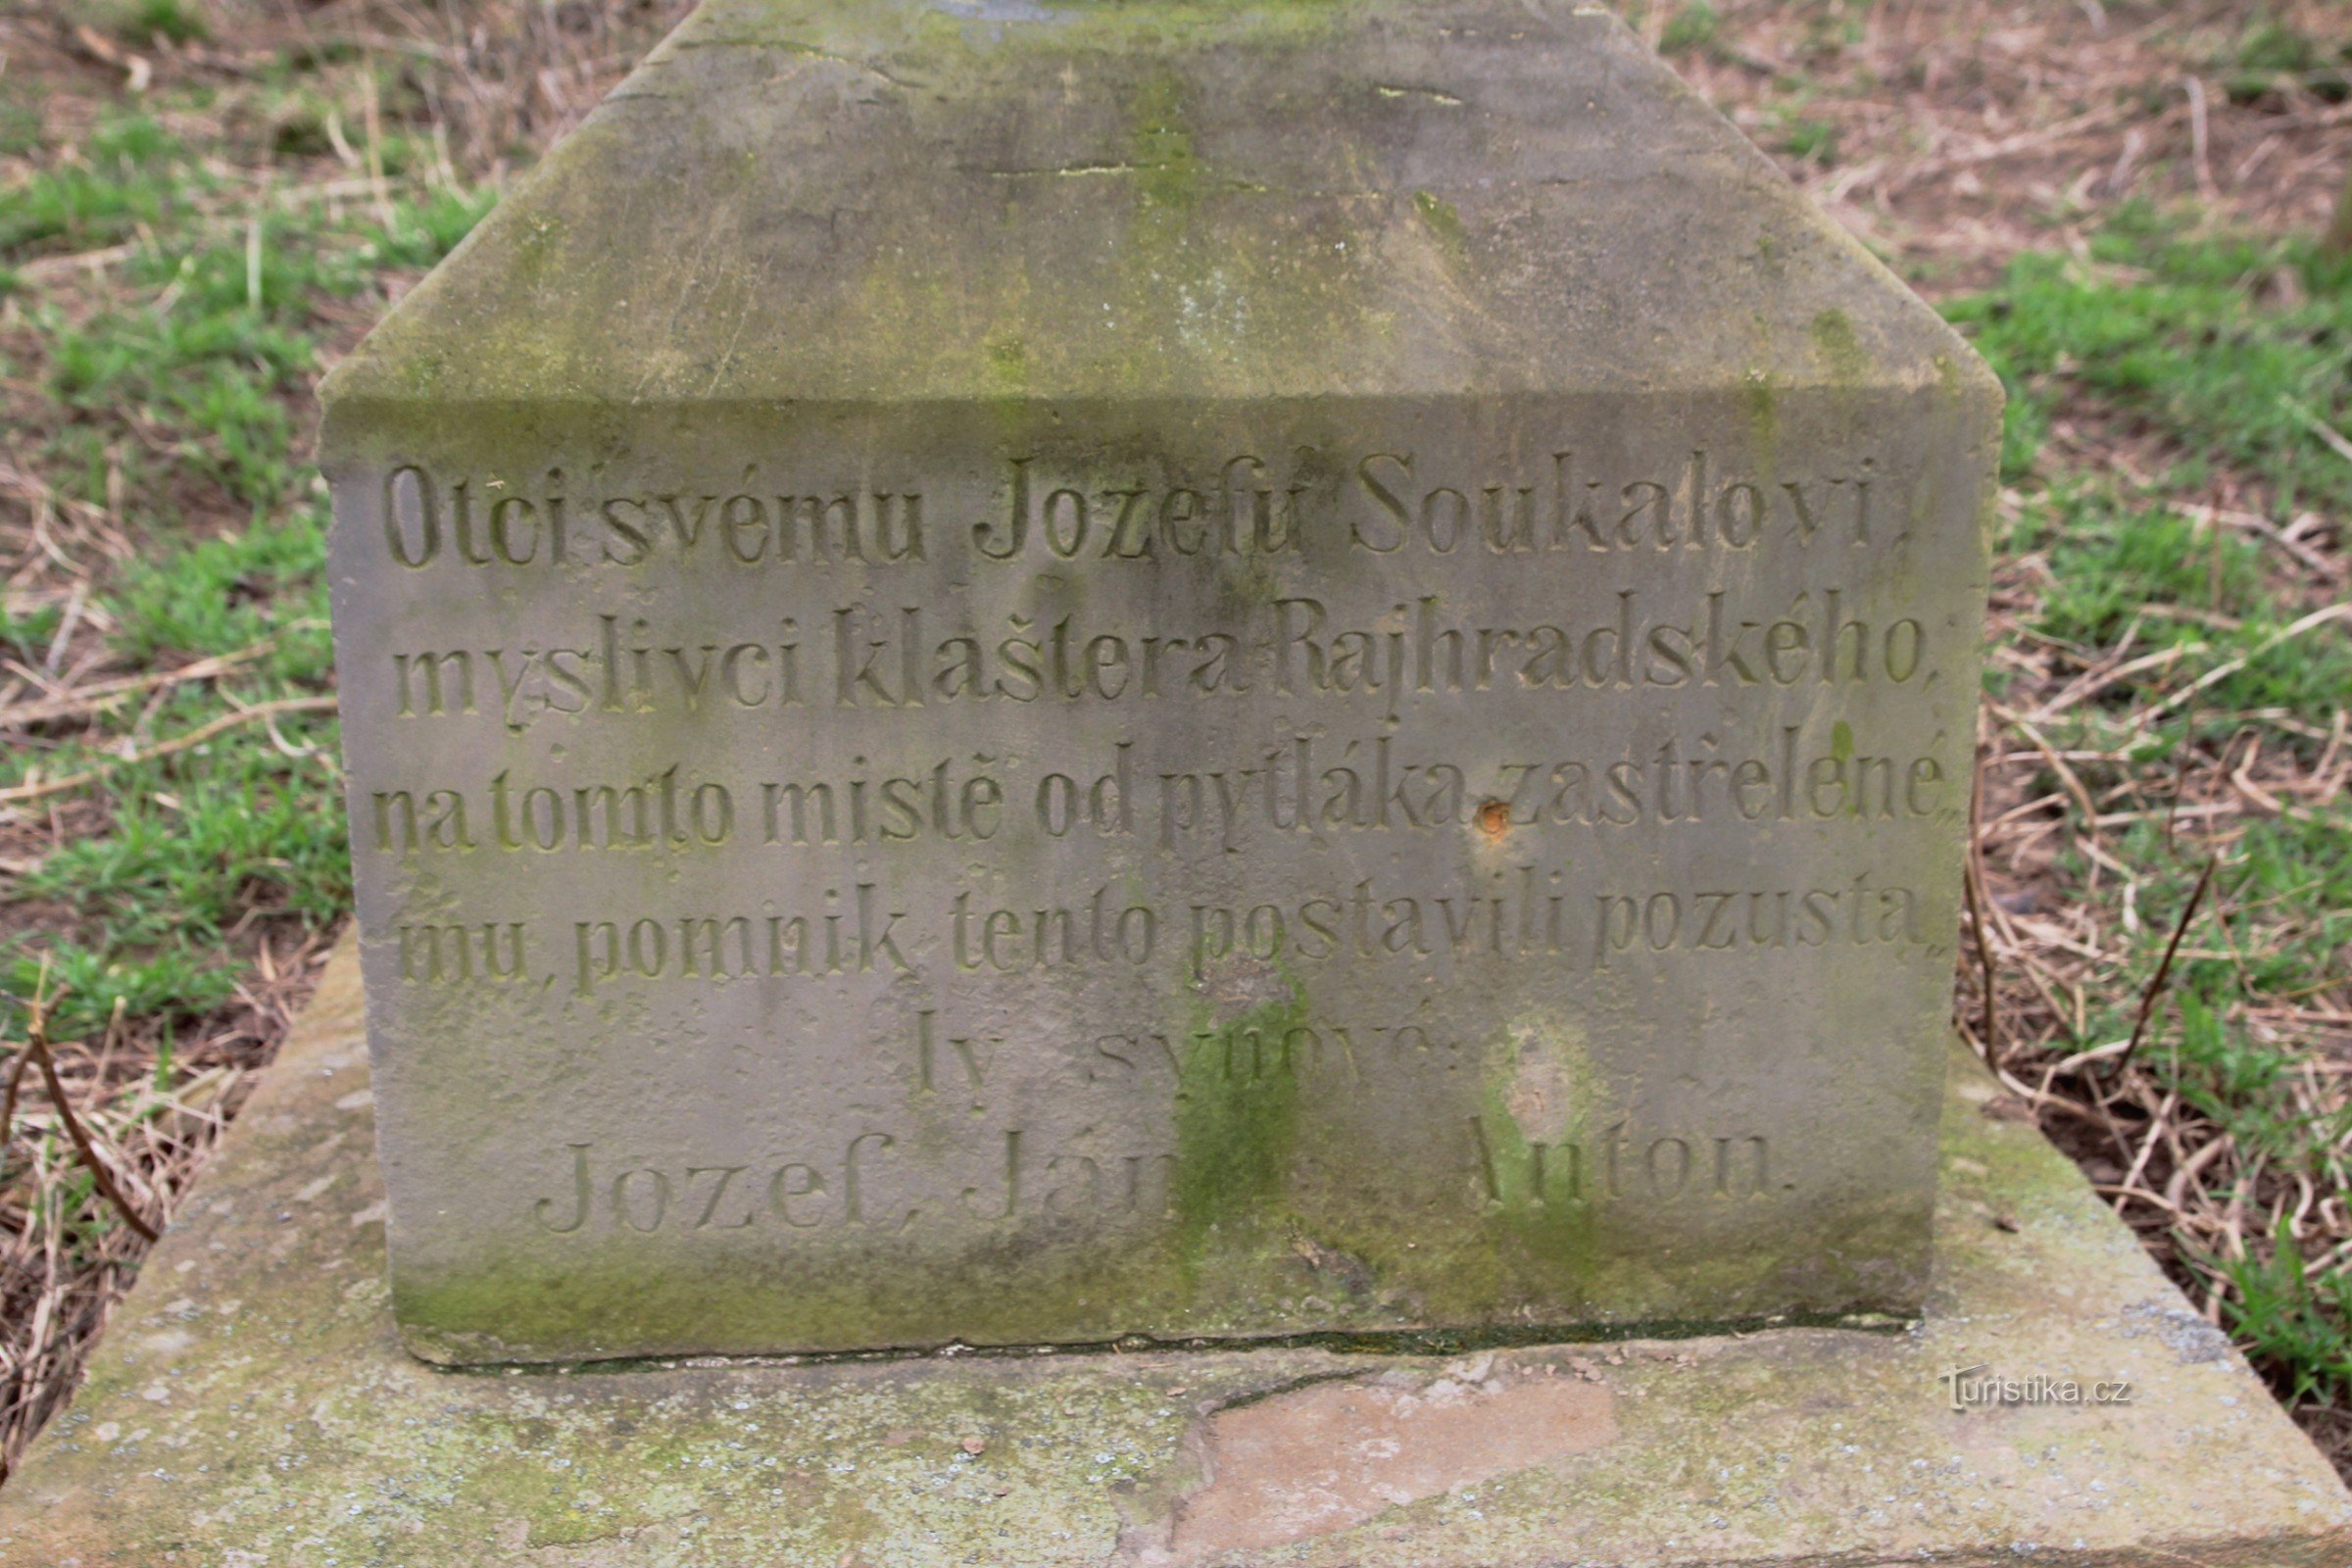 Detail van de inscriptie op het monument